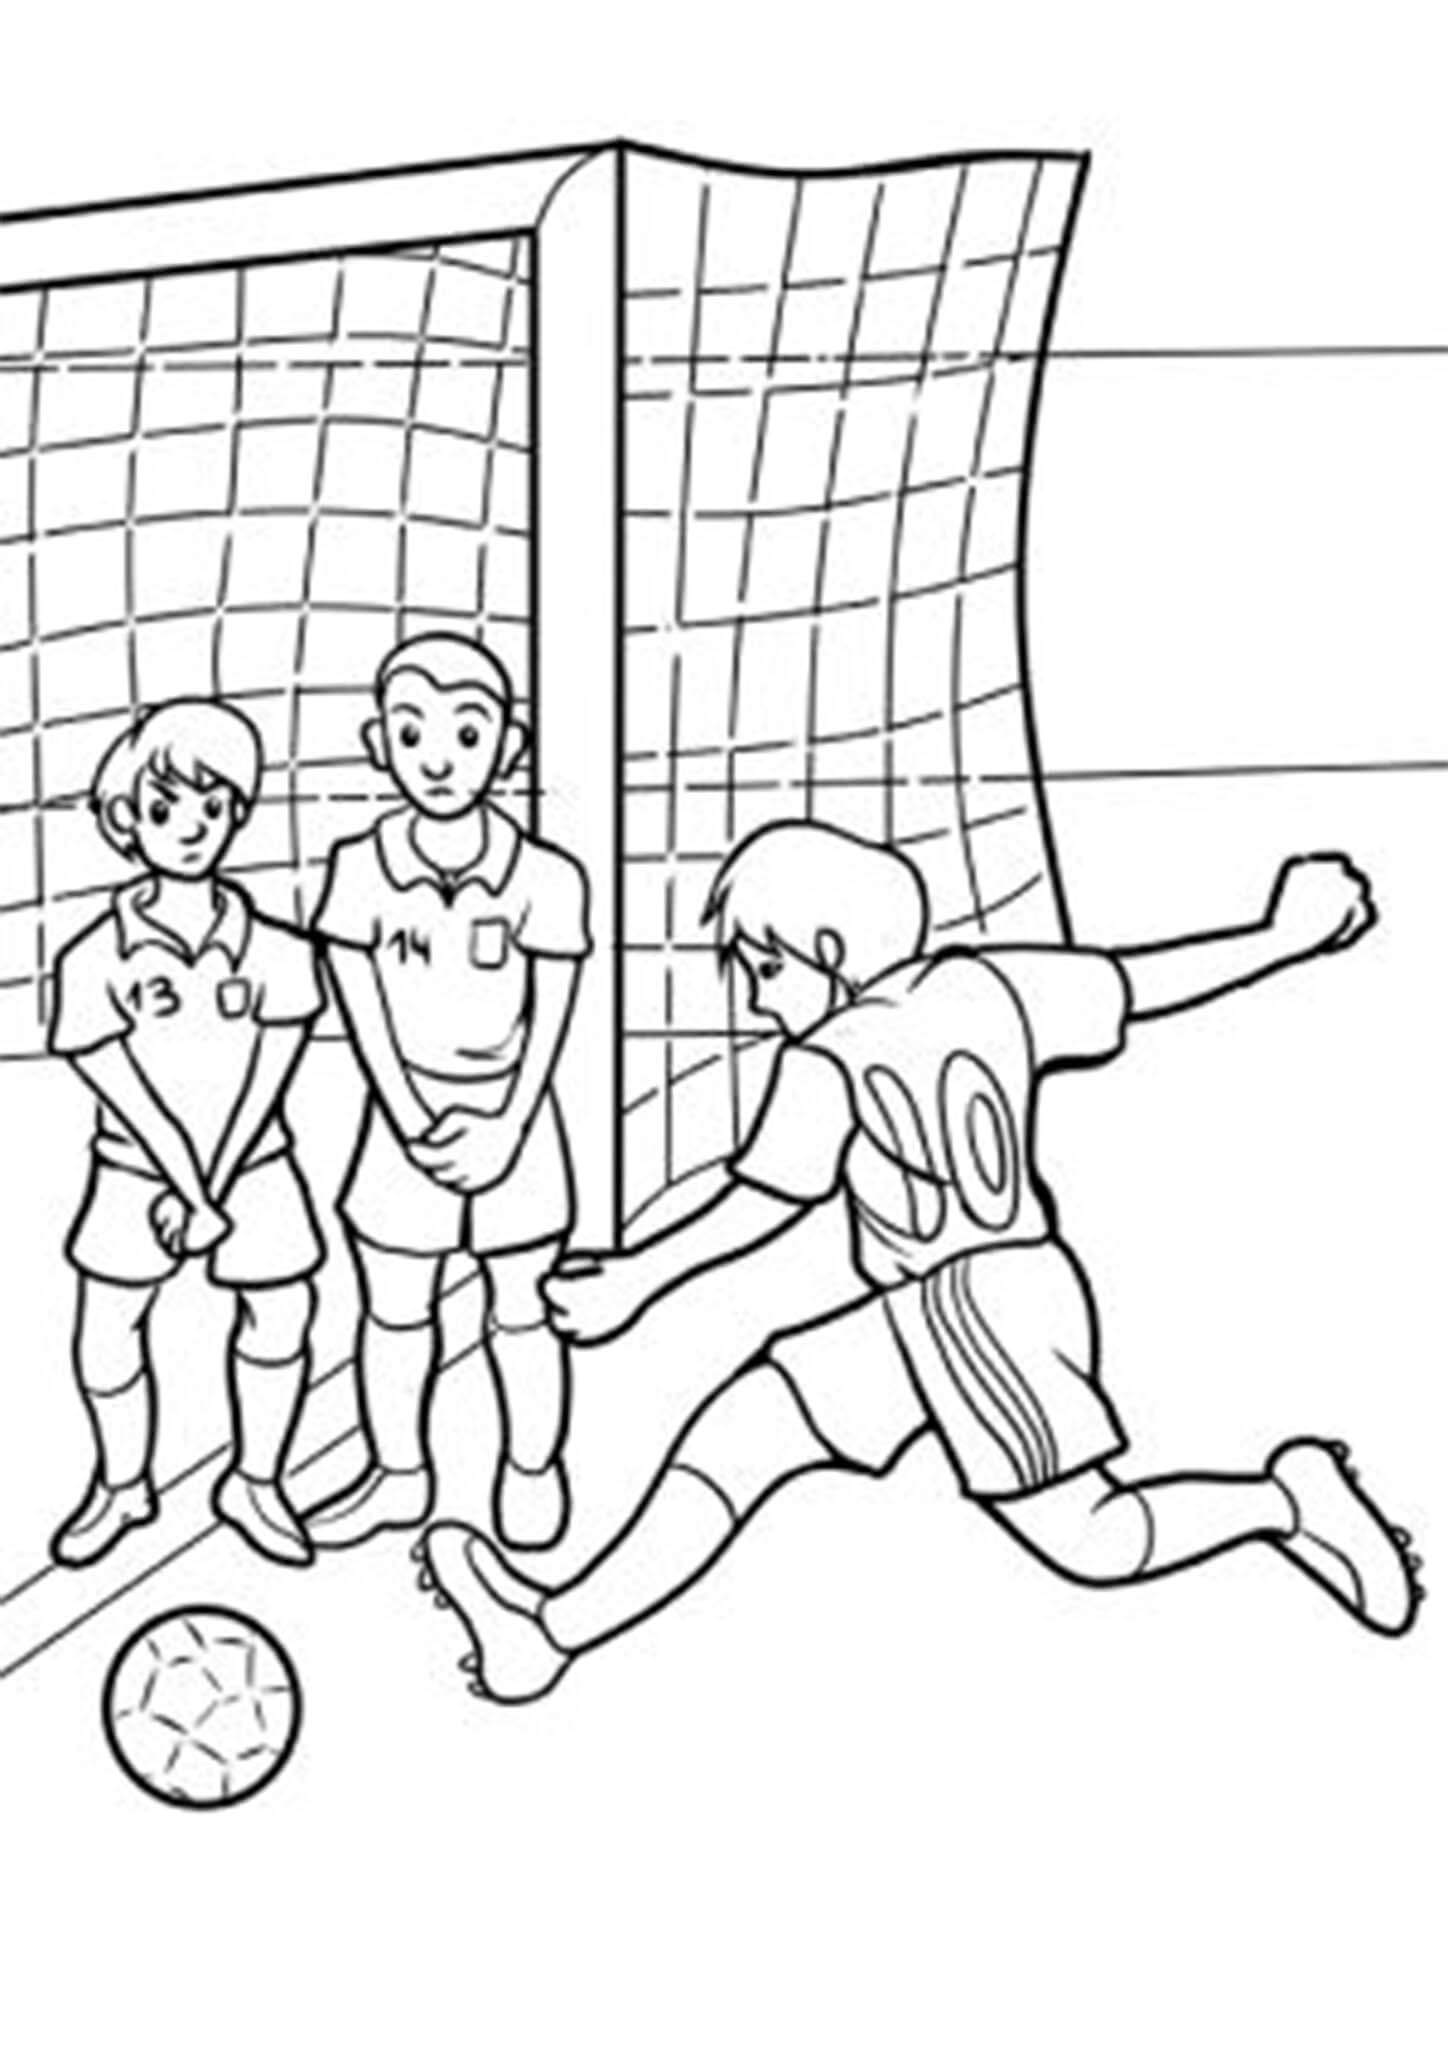 Зарисовки на тему футбола